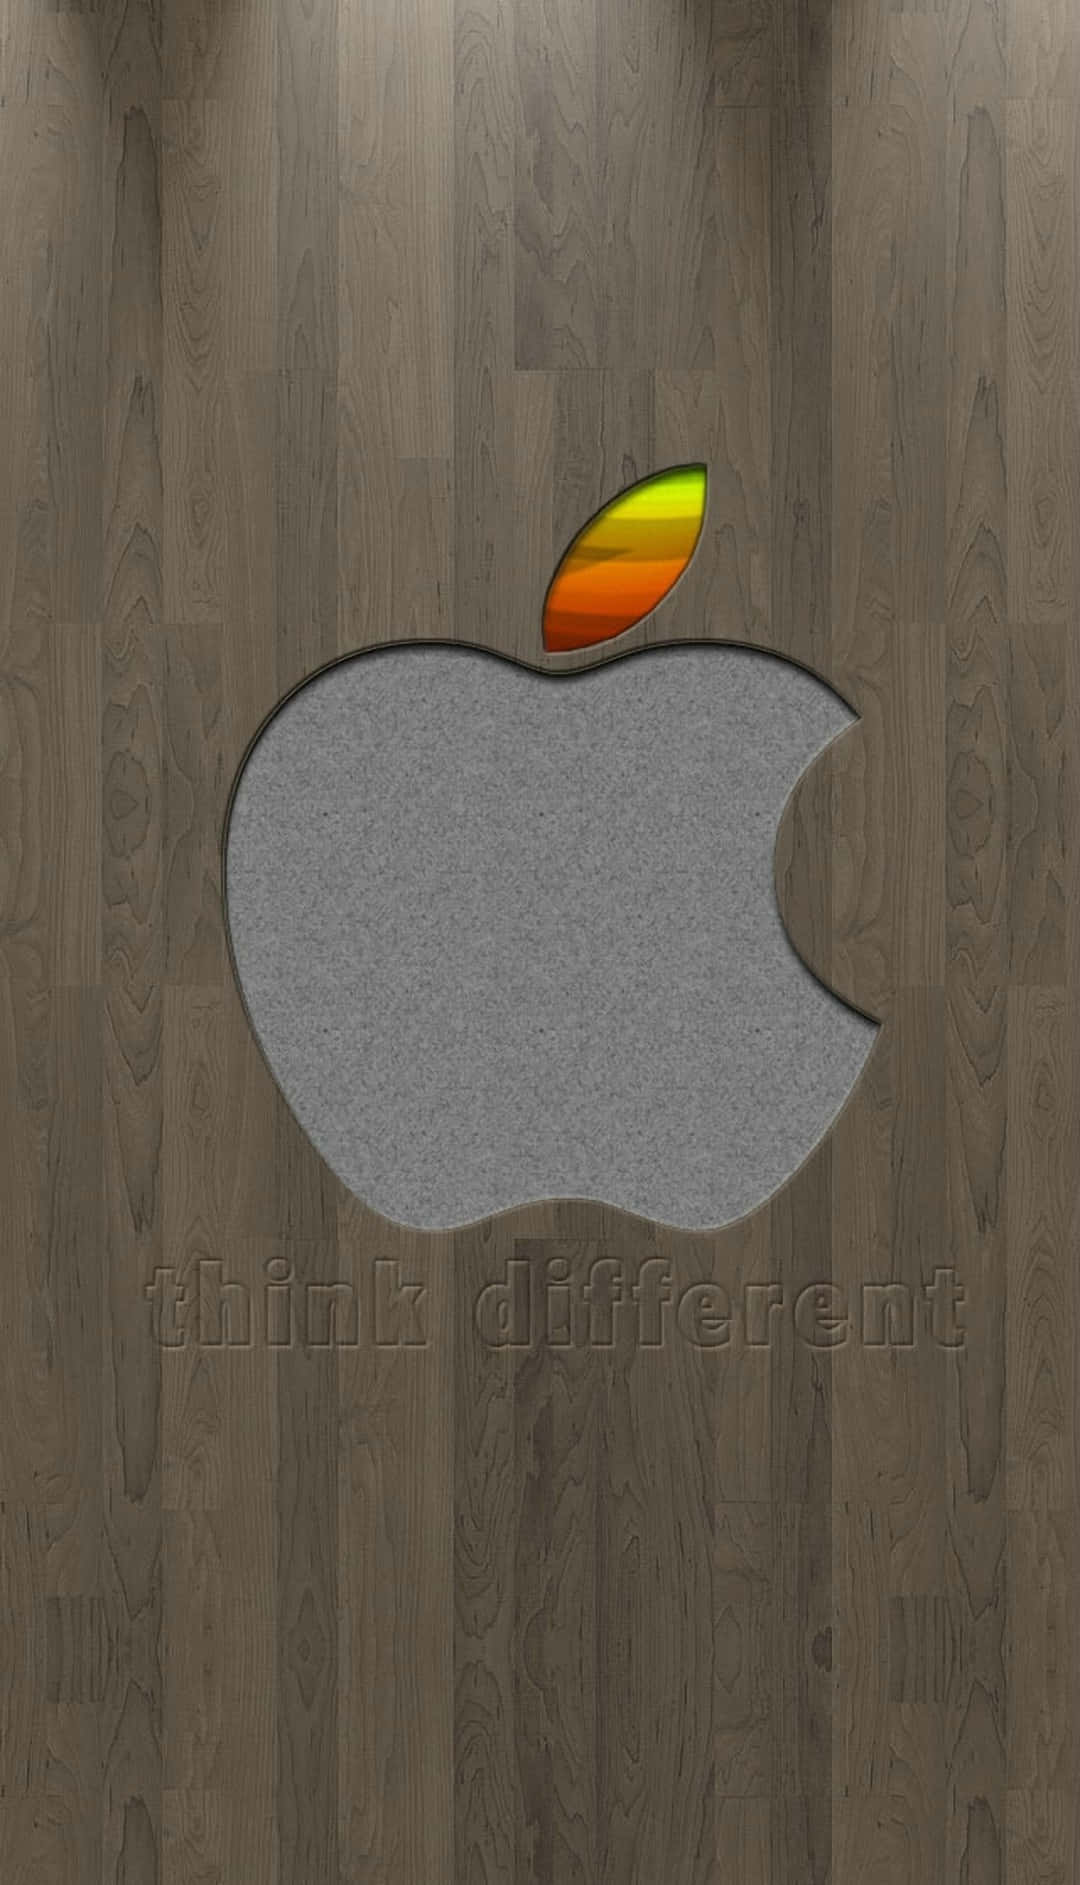 Stortgrått Logotyp Fantastisk Apple Hd Iphone. Wallpaper